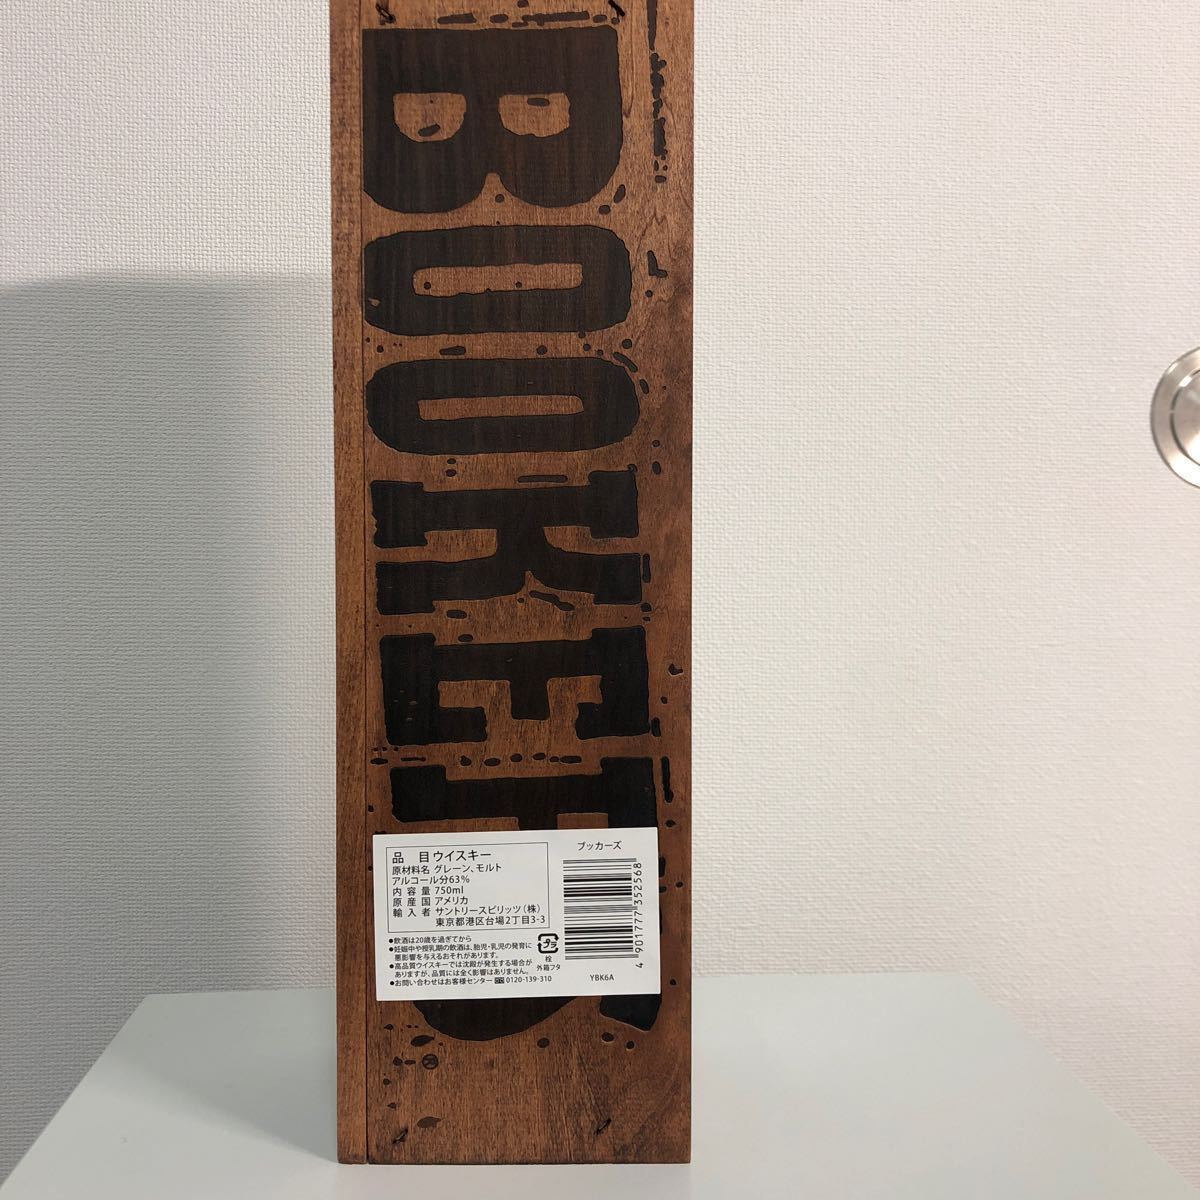 BOOKER’S バーボンウイスキー ブッカーズ 2020 [ ウイスキー アメリカ 750ml ] [ギフトBox入り] 1本_画像2